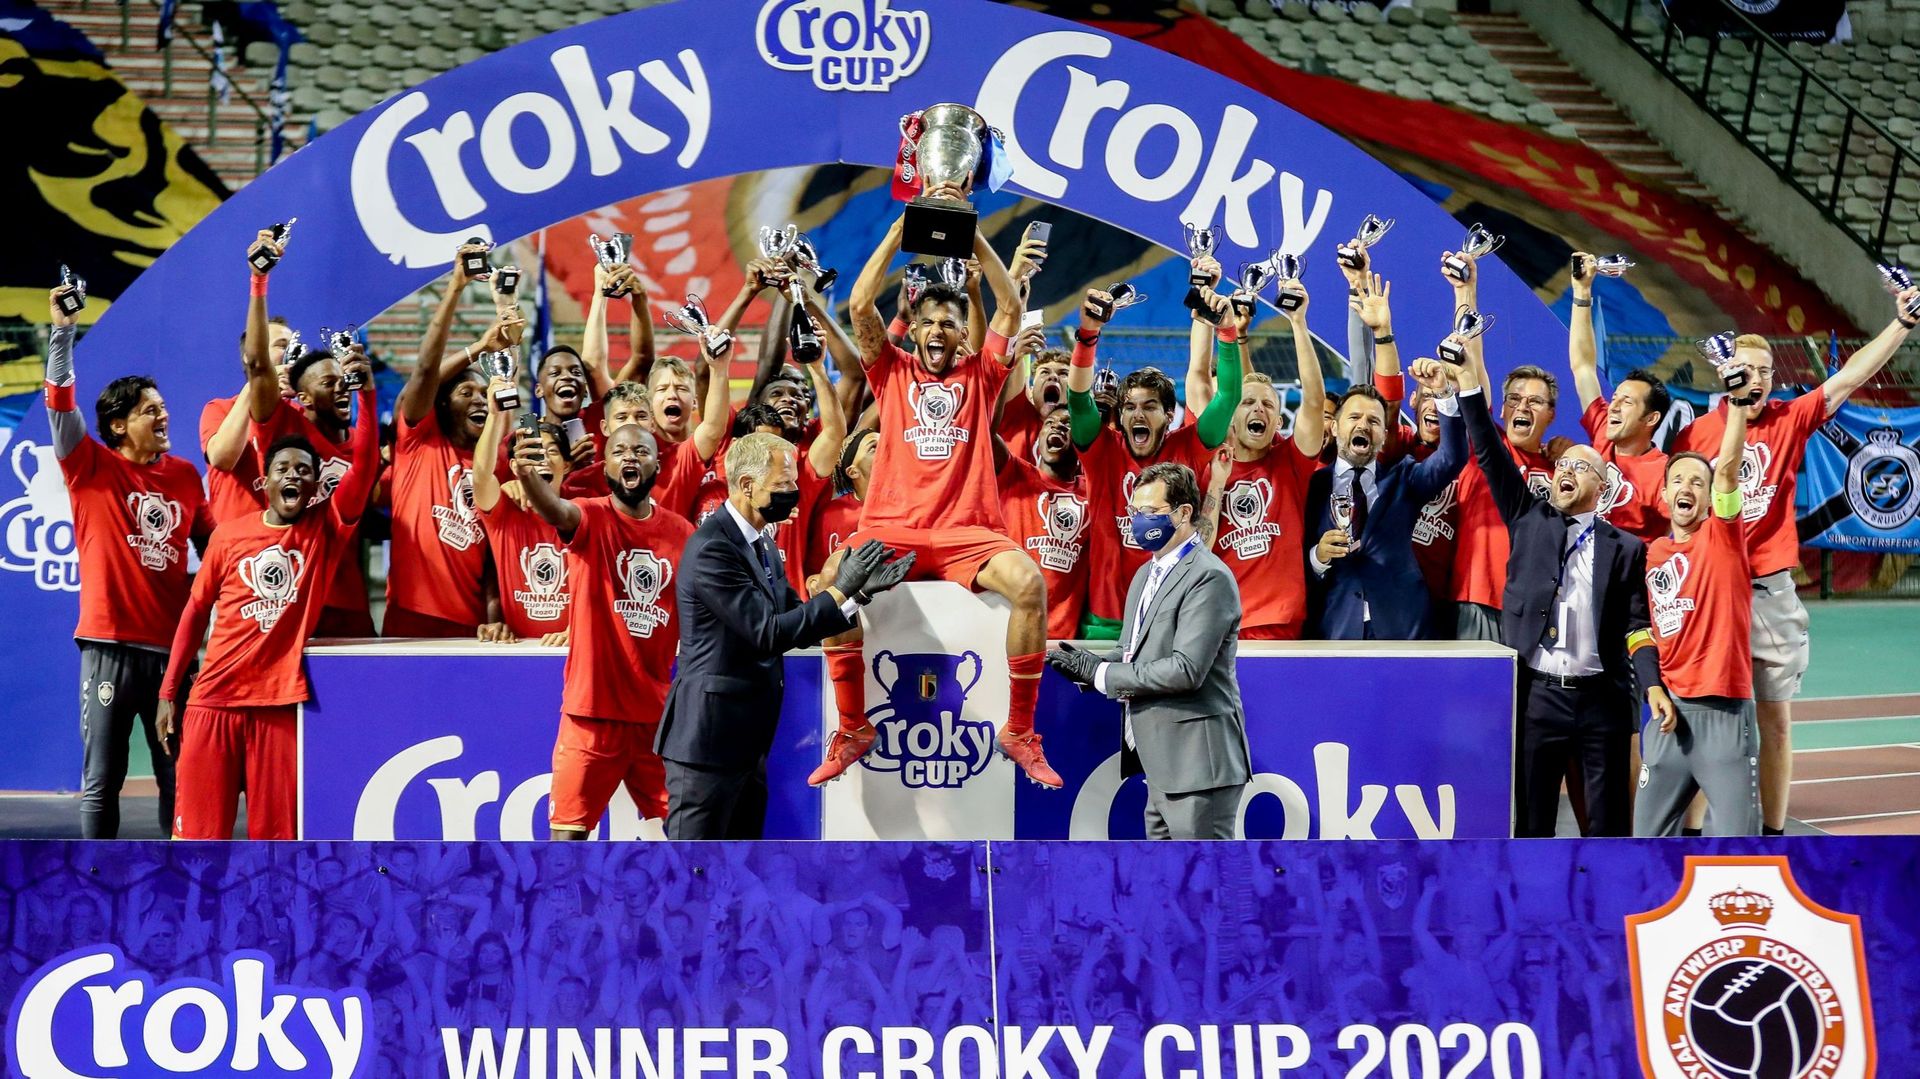 L'Antwerp dernier vainqueur de la Coupe de Belgique qualifié d'office pour l'Europa league